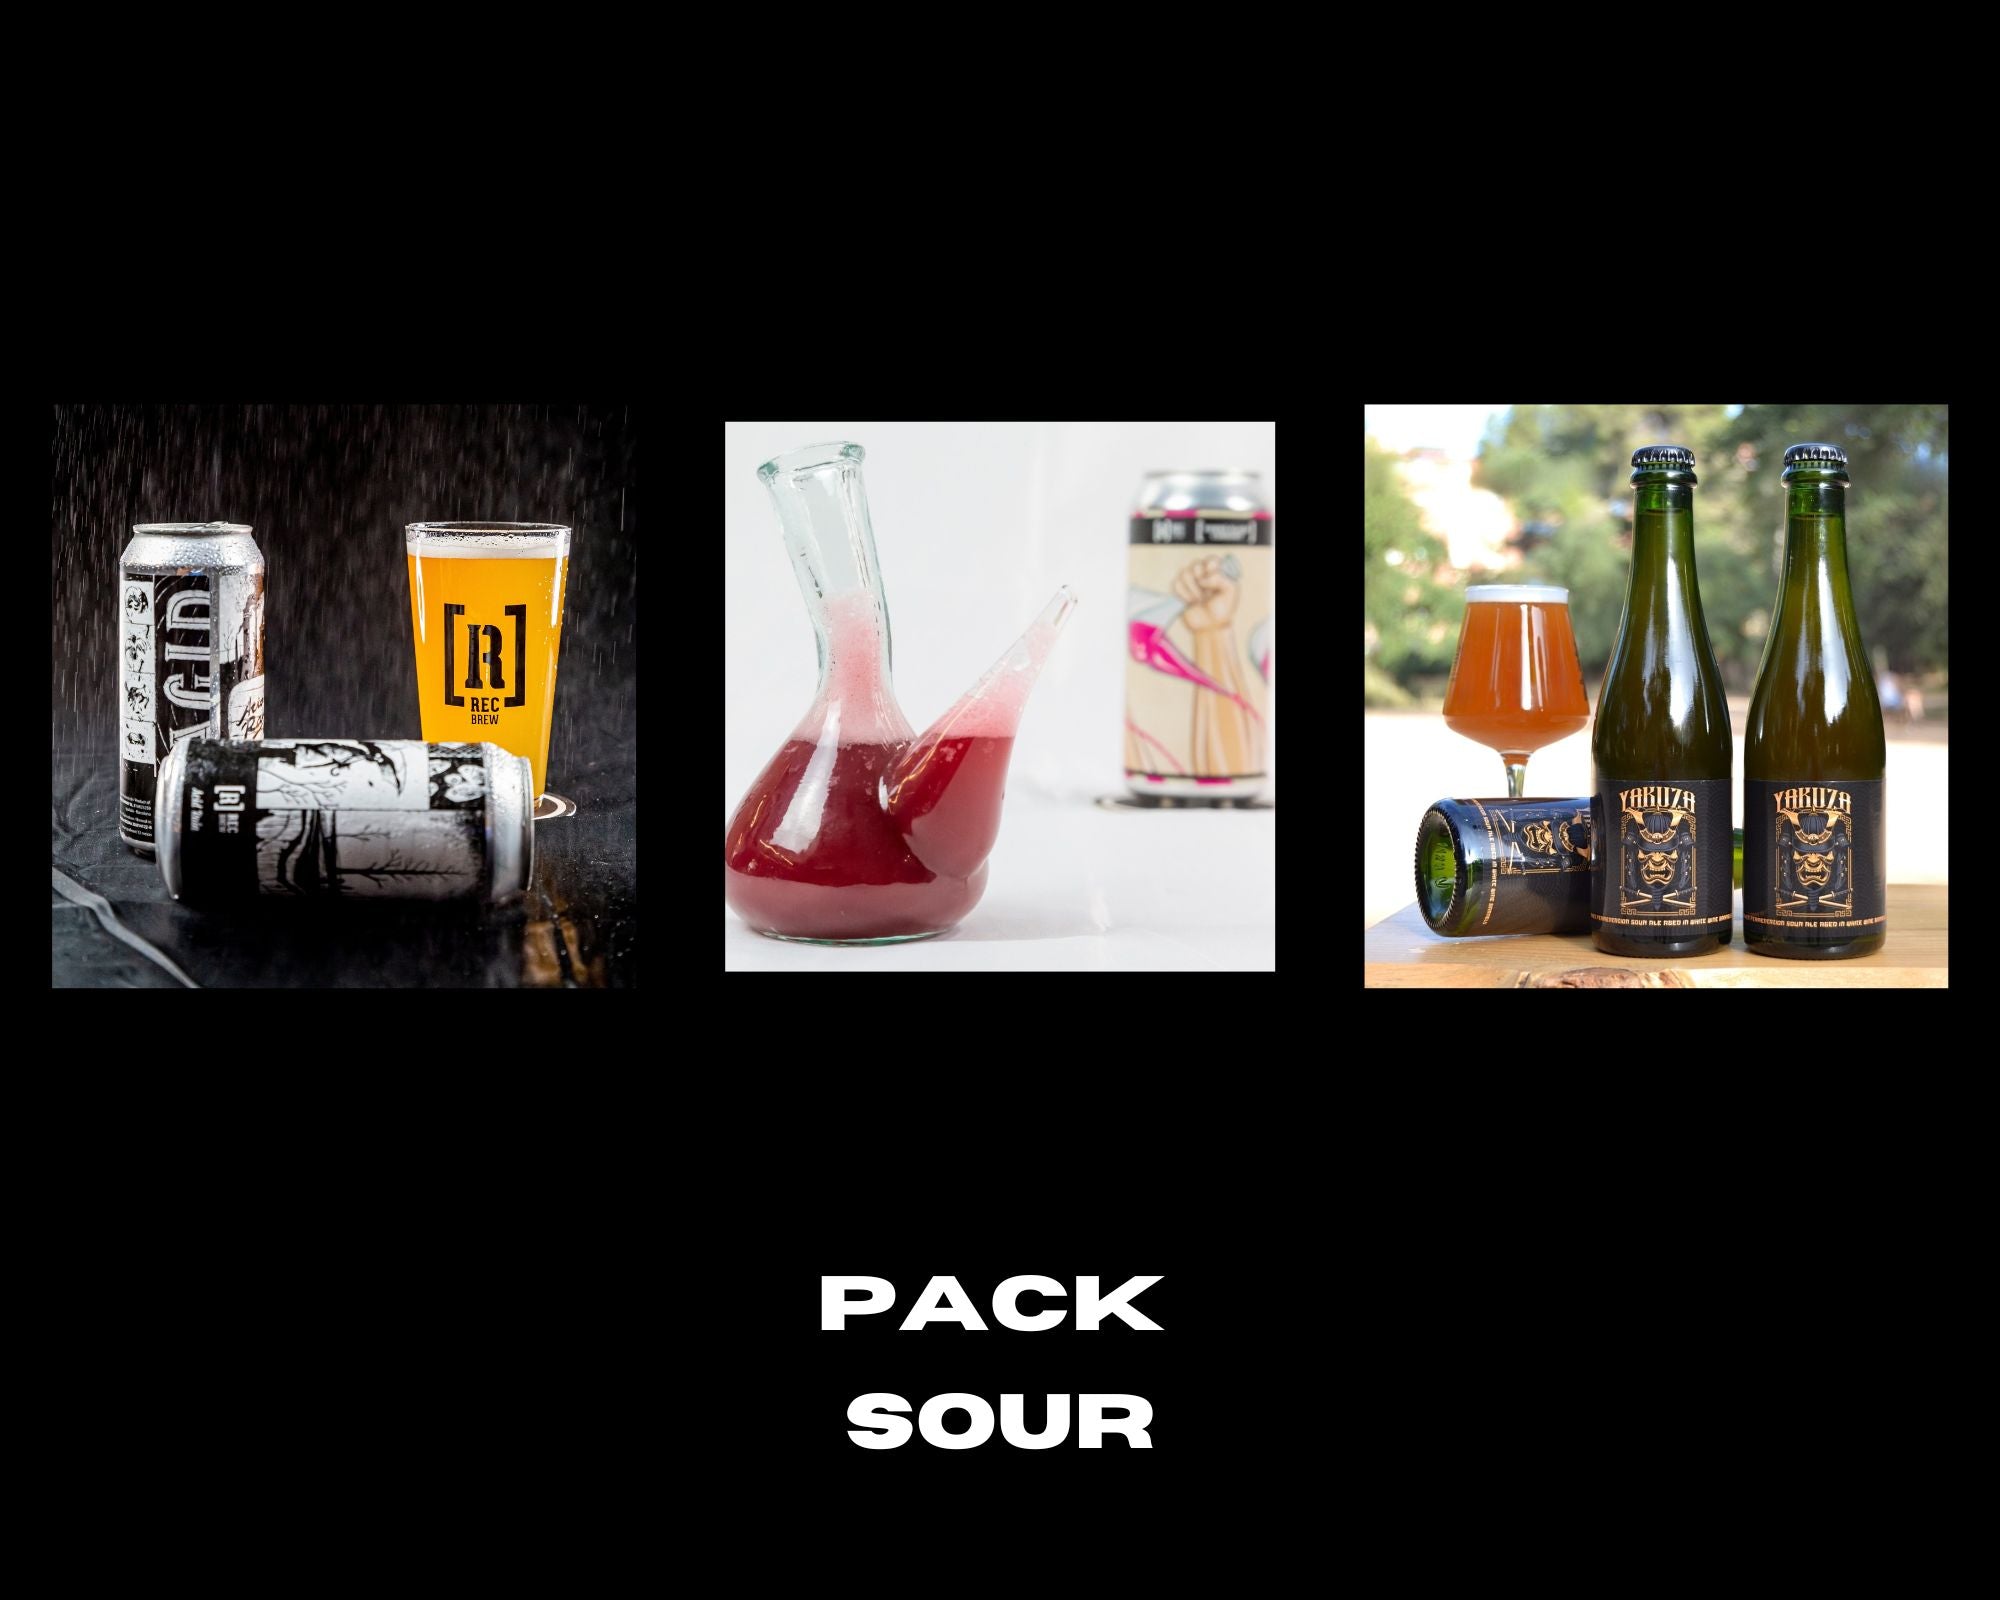 Pack Sour (12 latas) - Rec Brew